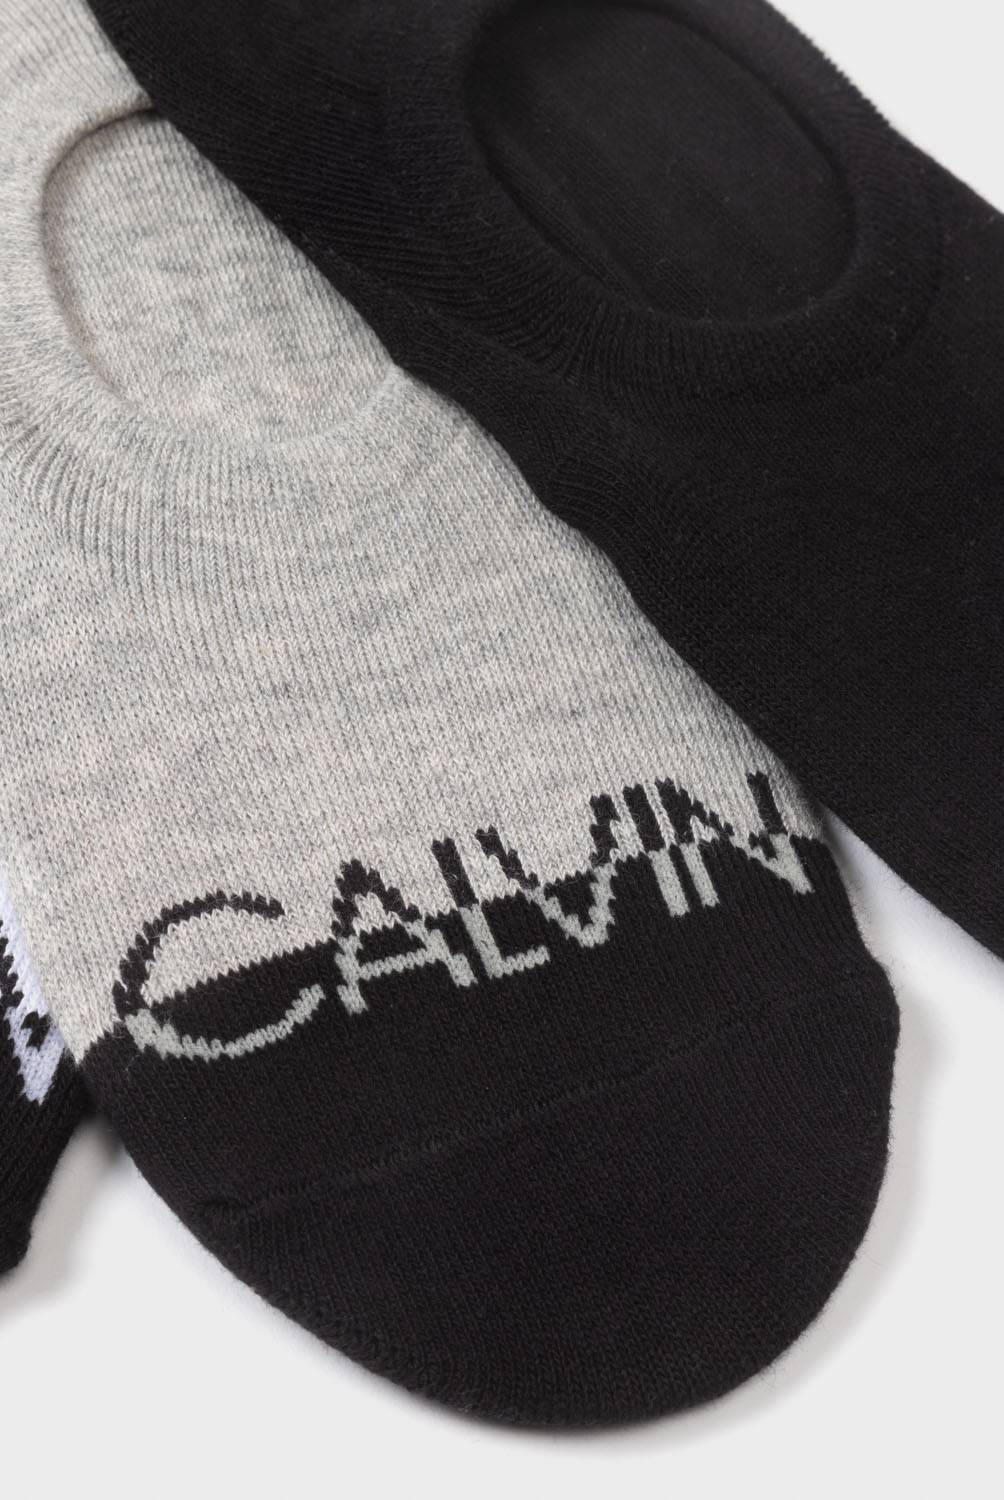 CALVIN KLEIN - Calvin Klein Pack de 3 Calcetín Casual Mujer